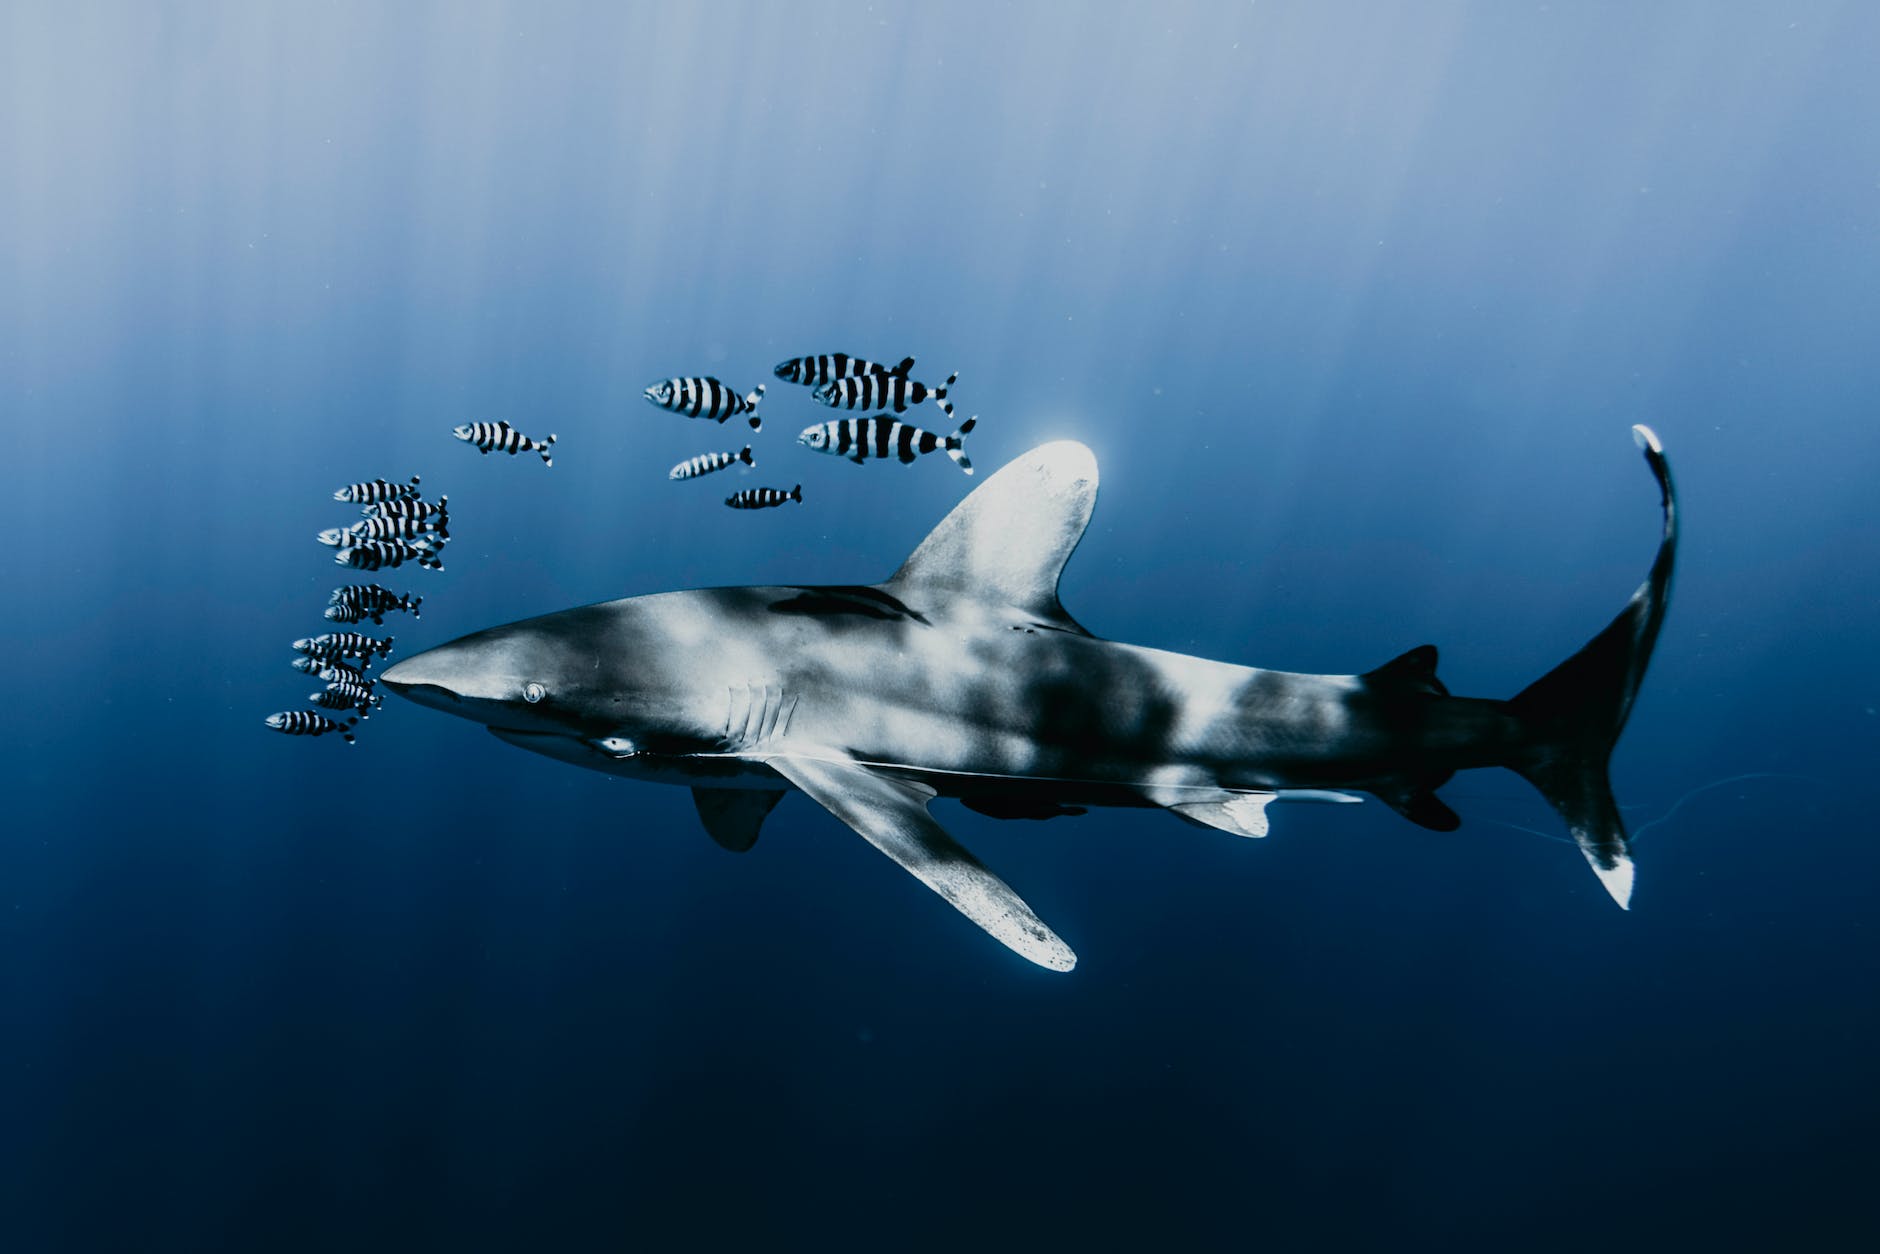 Der Longimanus ist eine Ikone unter den Haien im Roten Meer – Taucher unternehmen spezielle Tauchausfahrten, um ihn sehen zu können. Er gilt als vergleichsweise neugierig und angriffslustig.